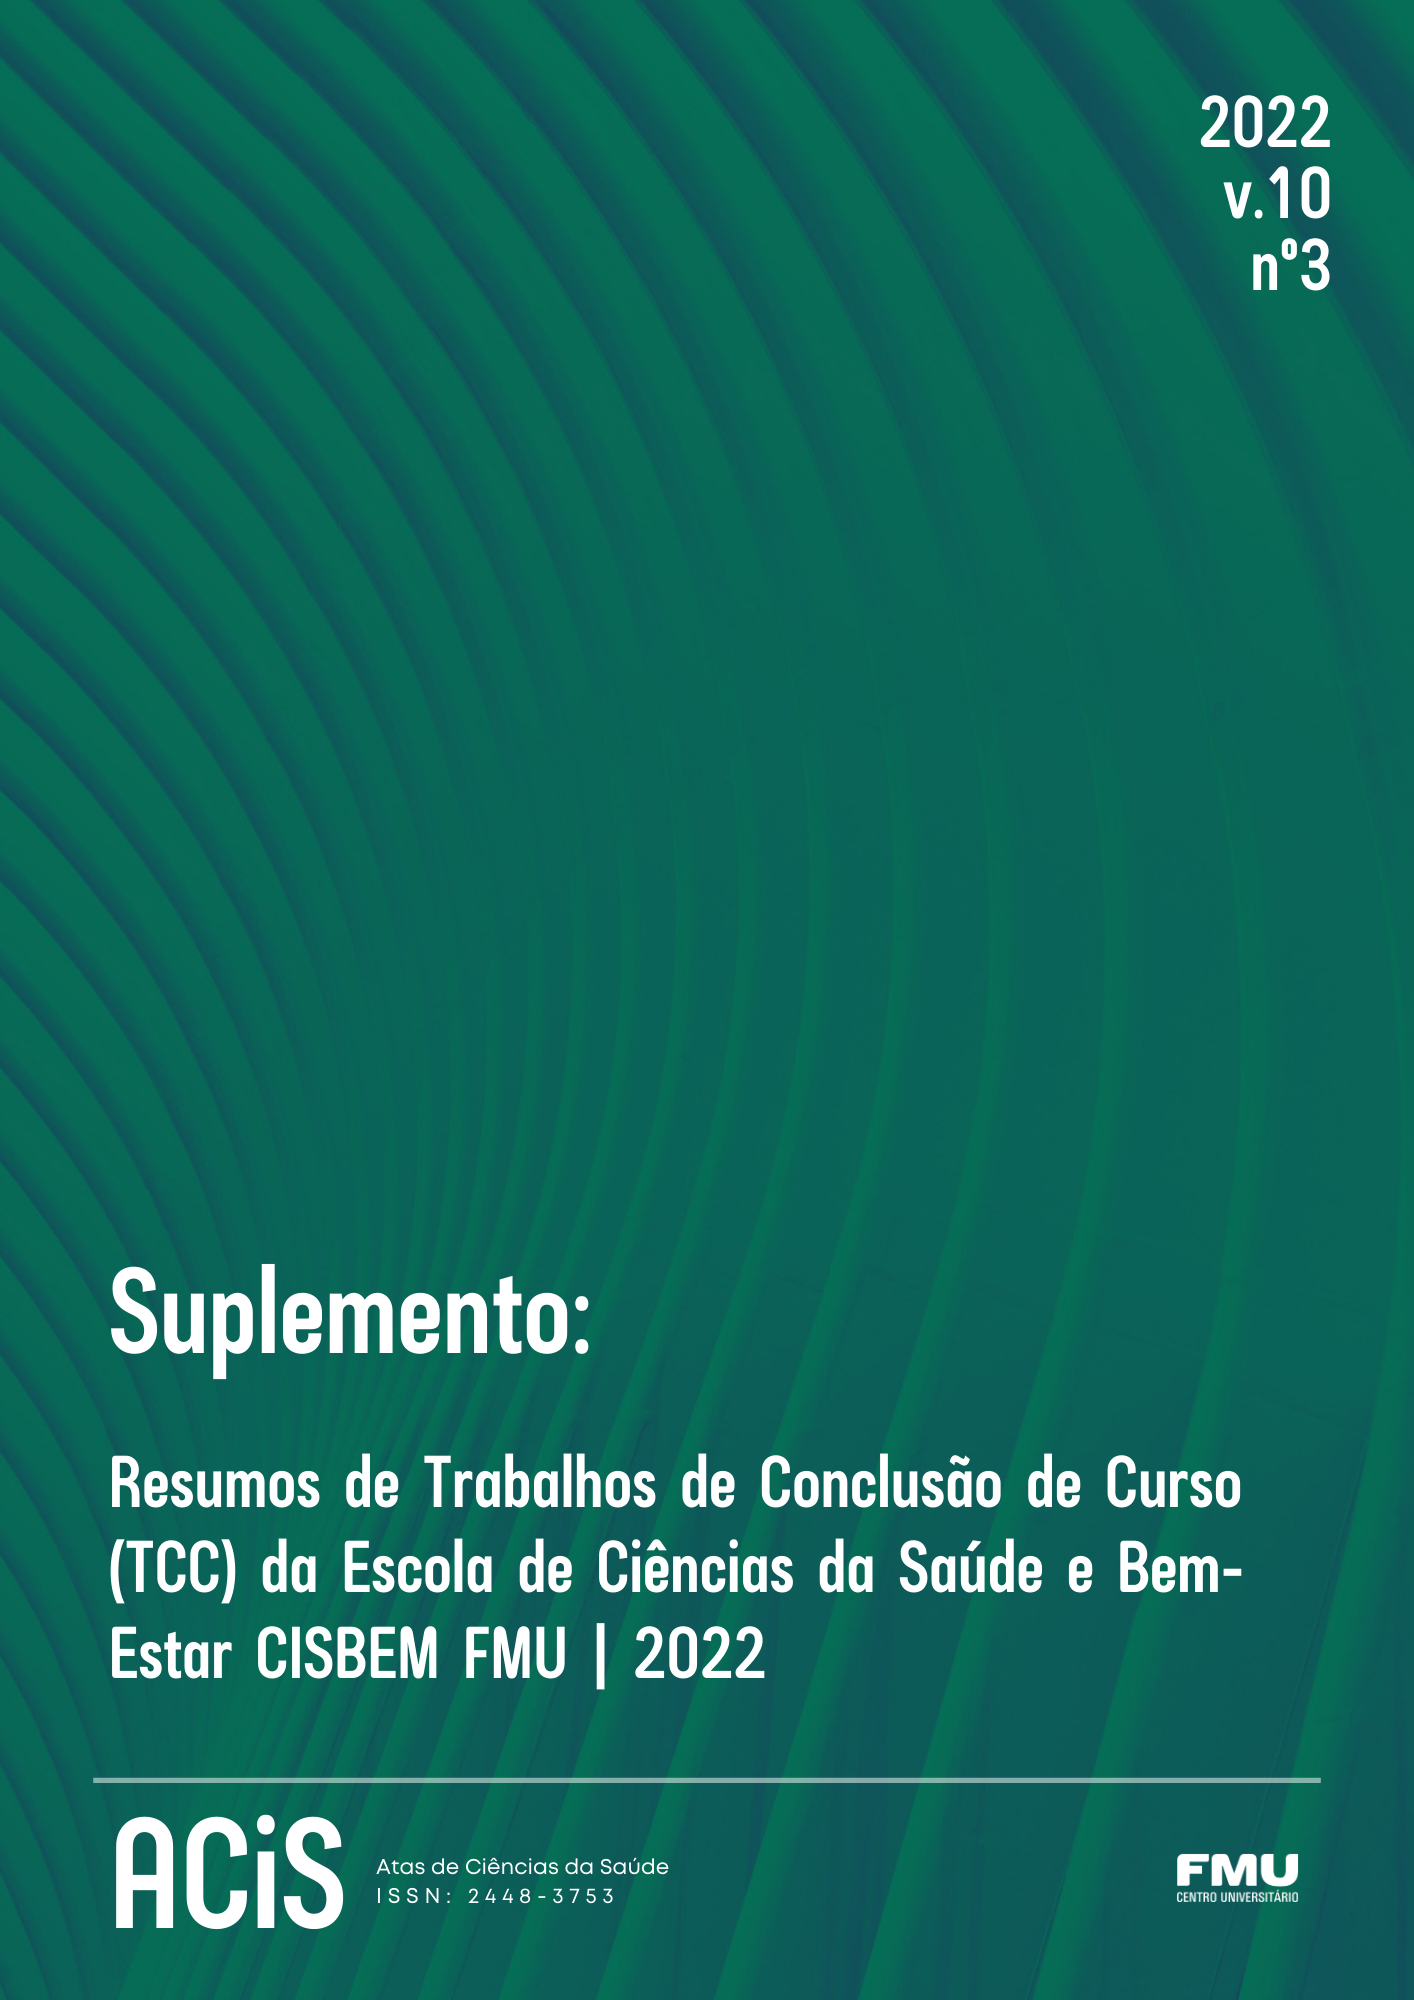 					View Vol. 10 No. 3 (2022): Suplemento: resumos de Trabalhos de Conclusão de Curso (TCC) da Escola de Ciências da Saúde e Bem-estar CISBEM FMU / 2022
				